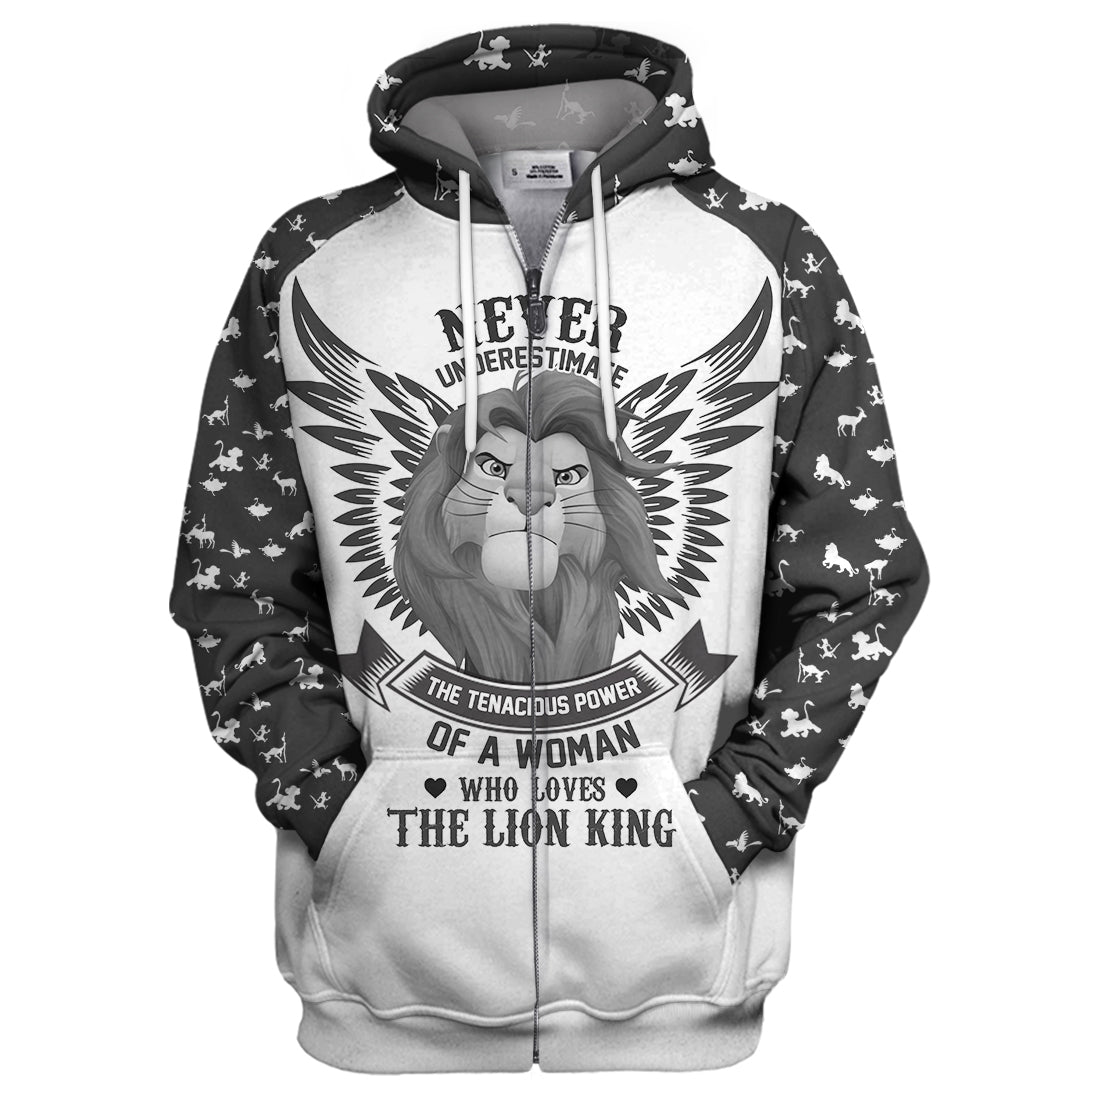 Unifinz DN LK T-shirt Never Underestimate Lion King T-shirt Awesome DN LK Hoodie Sweater Tank 2023